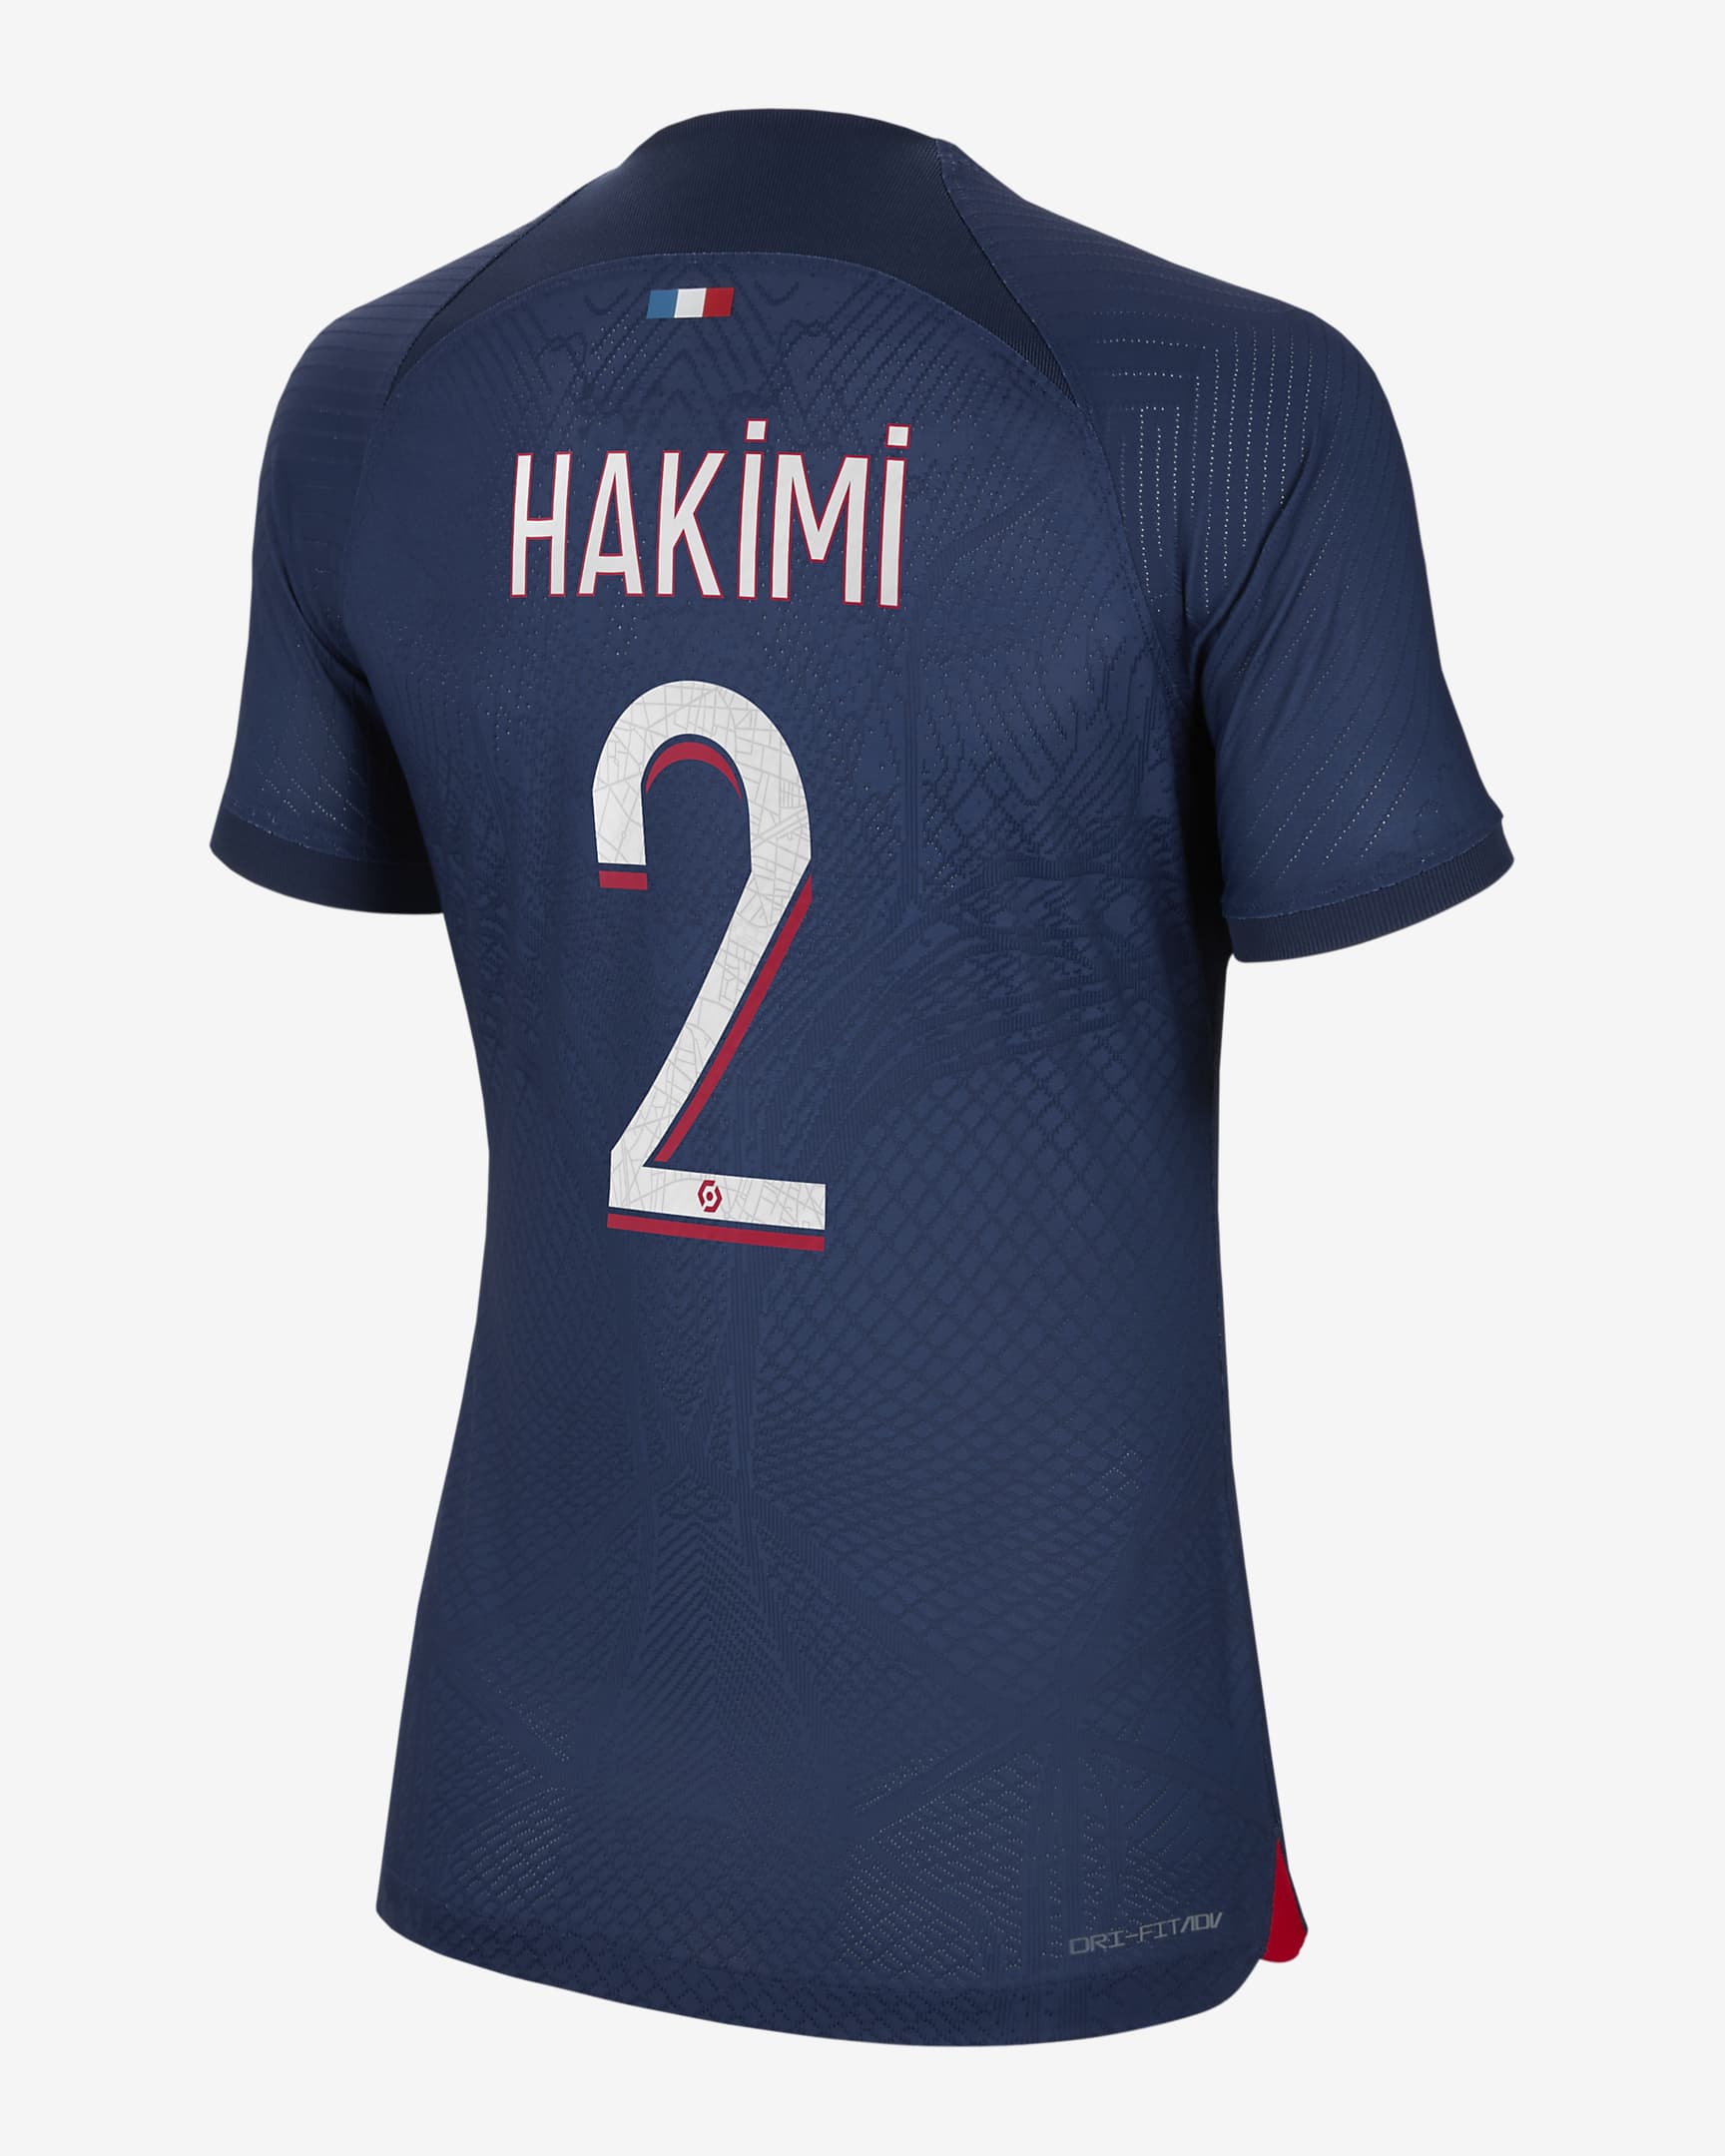 Jersey de fútbol Nike Dri-FIT ADV para mujer Achraf Hakimi Paris Saint ...